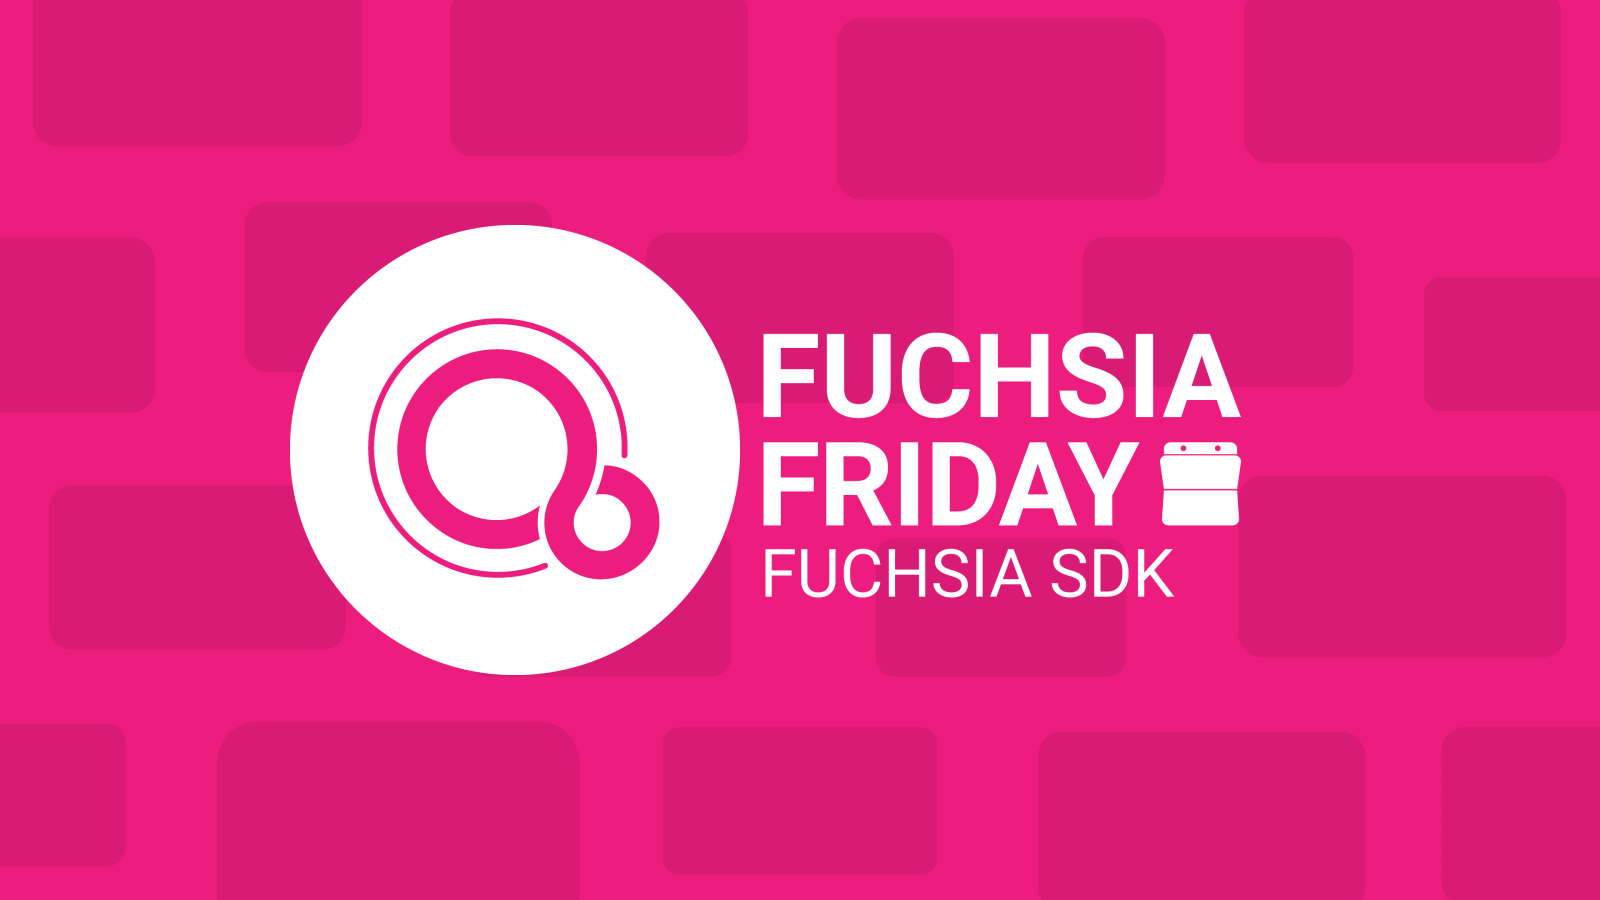 Fuchsia Friday Fuchsia SDK